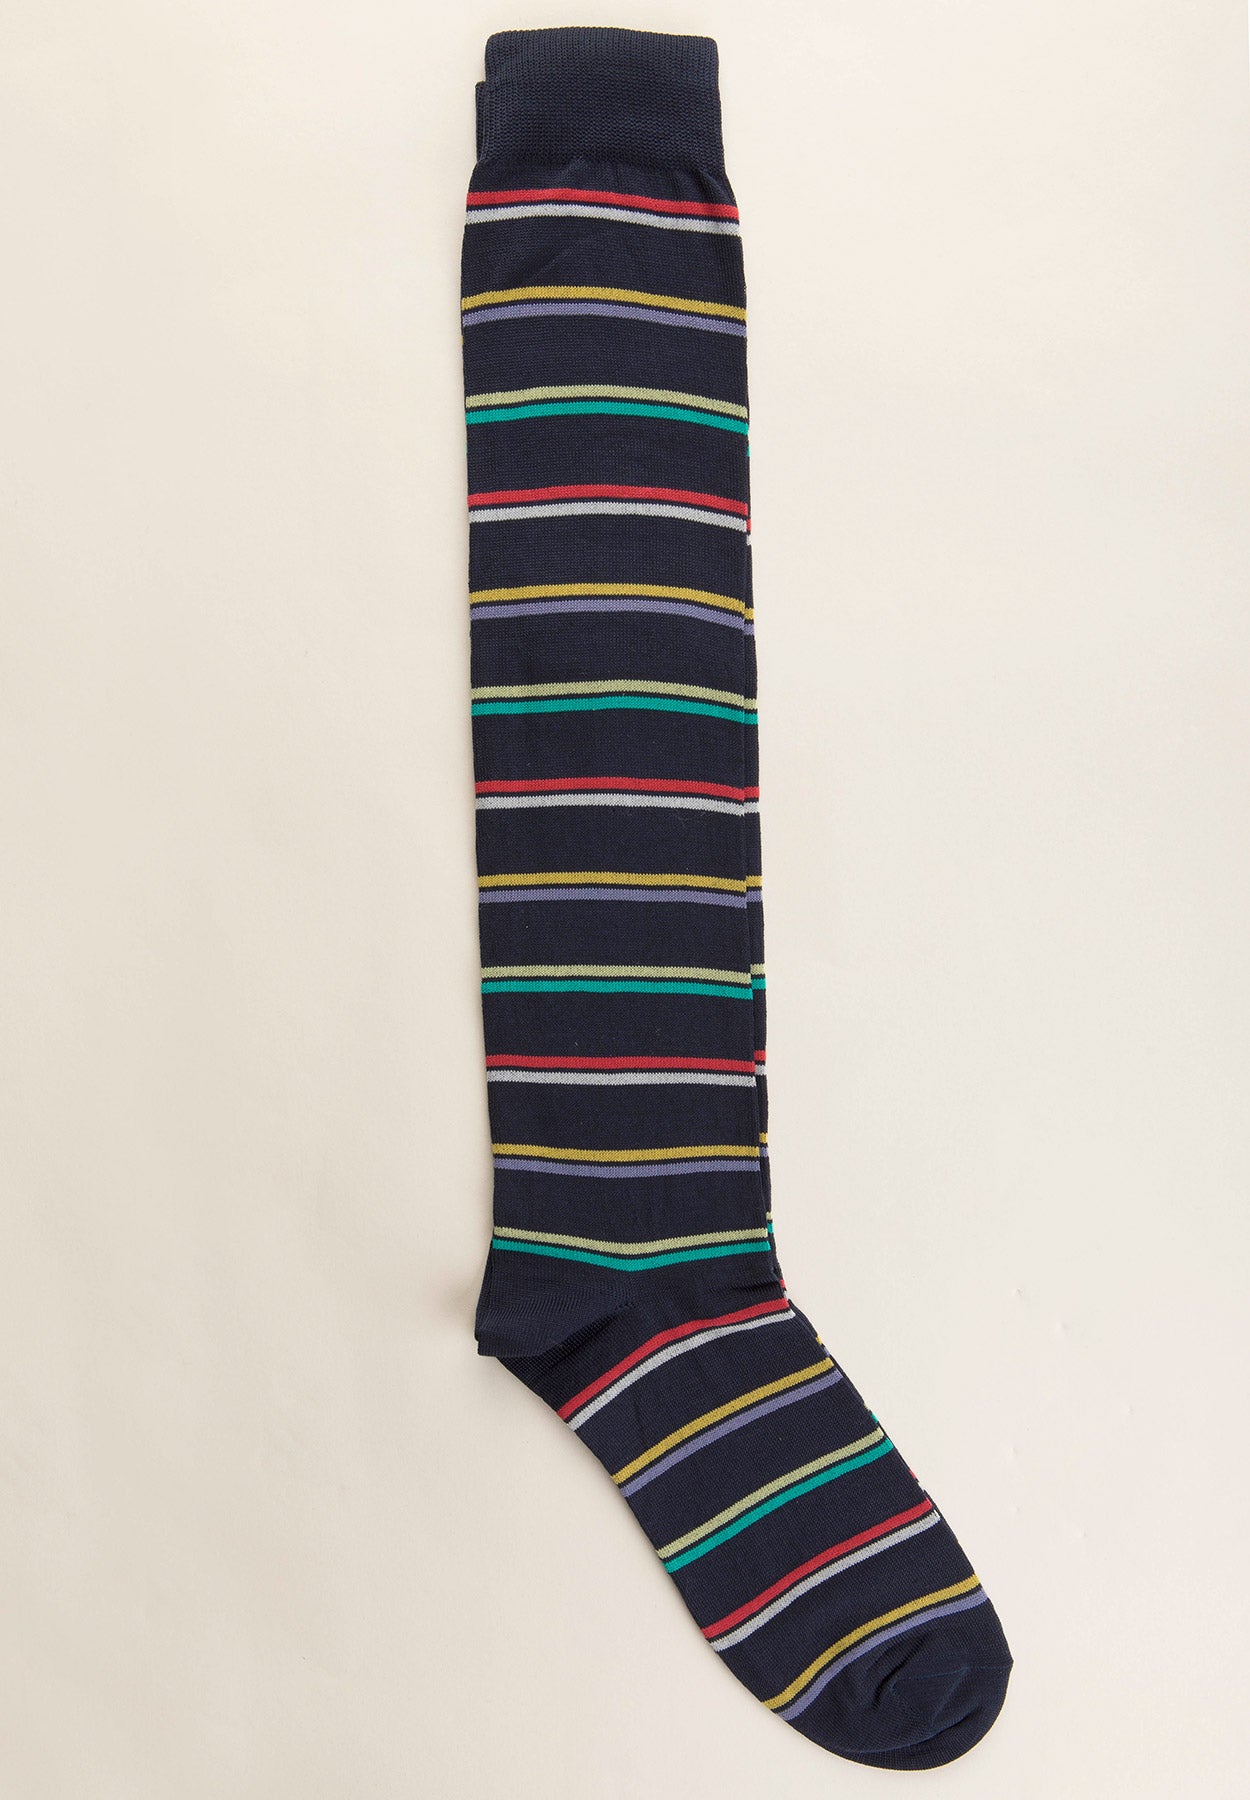 Blaue Socken aus Stretch-Baumwolle mit mehrfarbigen Streifen